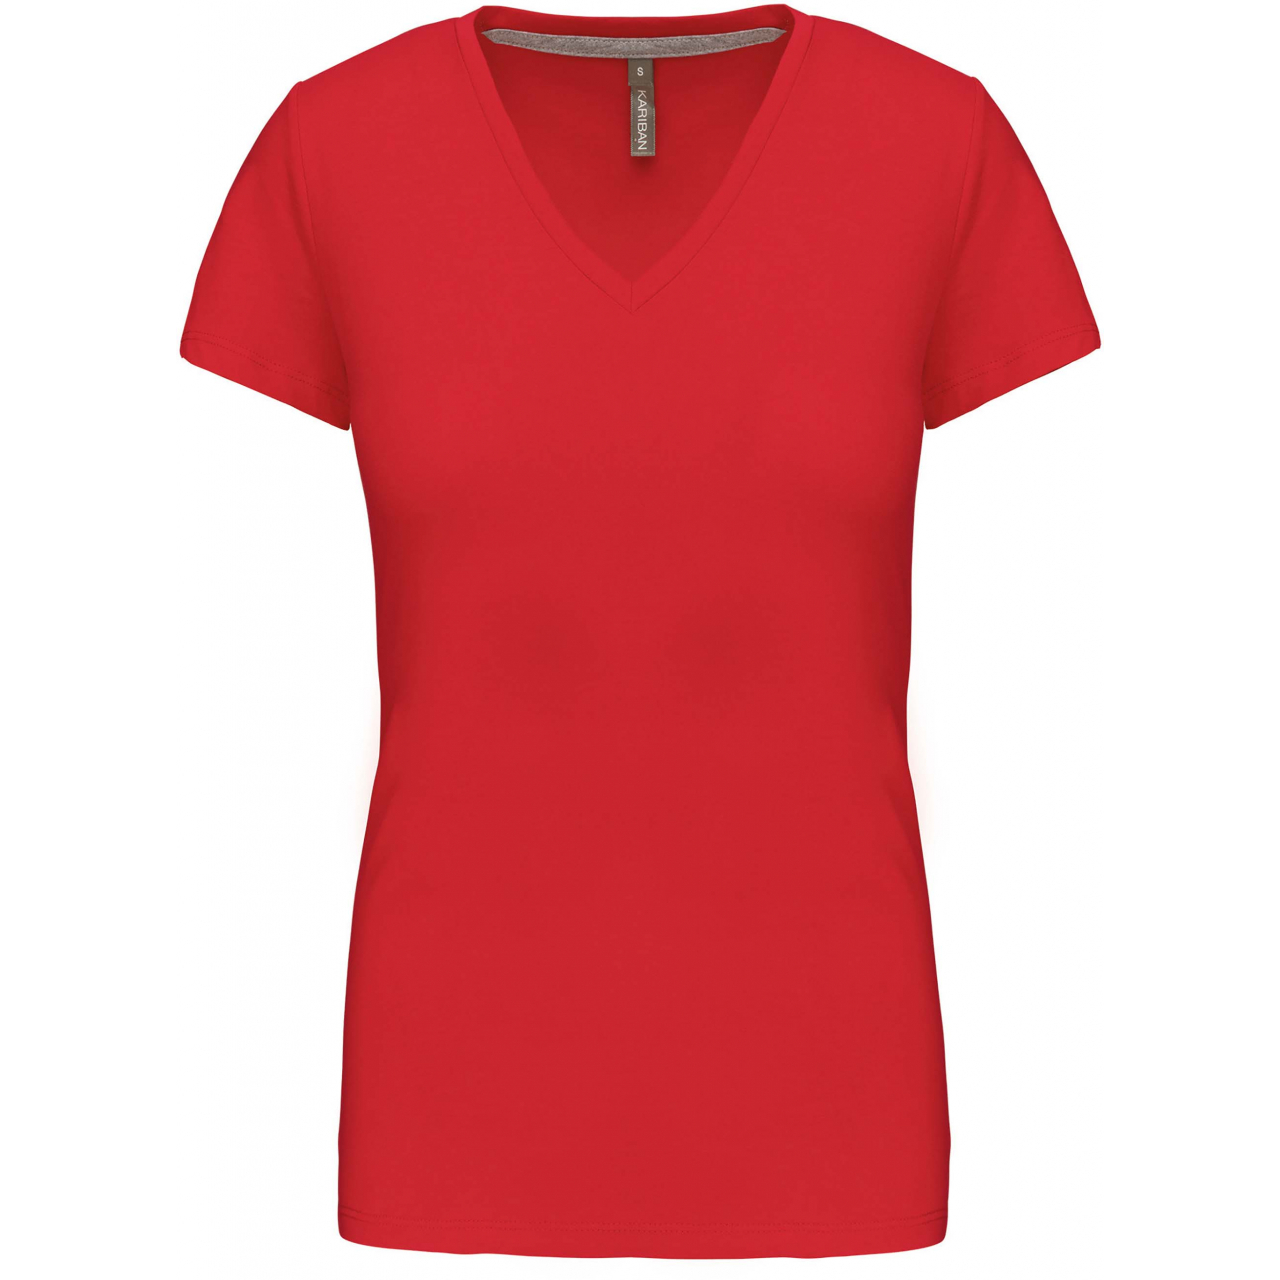 Dámské tričko Kariban V-neck s krátkým rukávem - červené, L